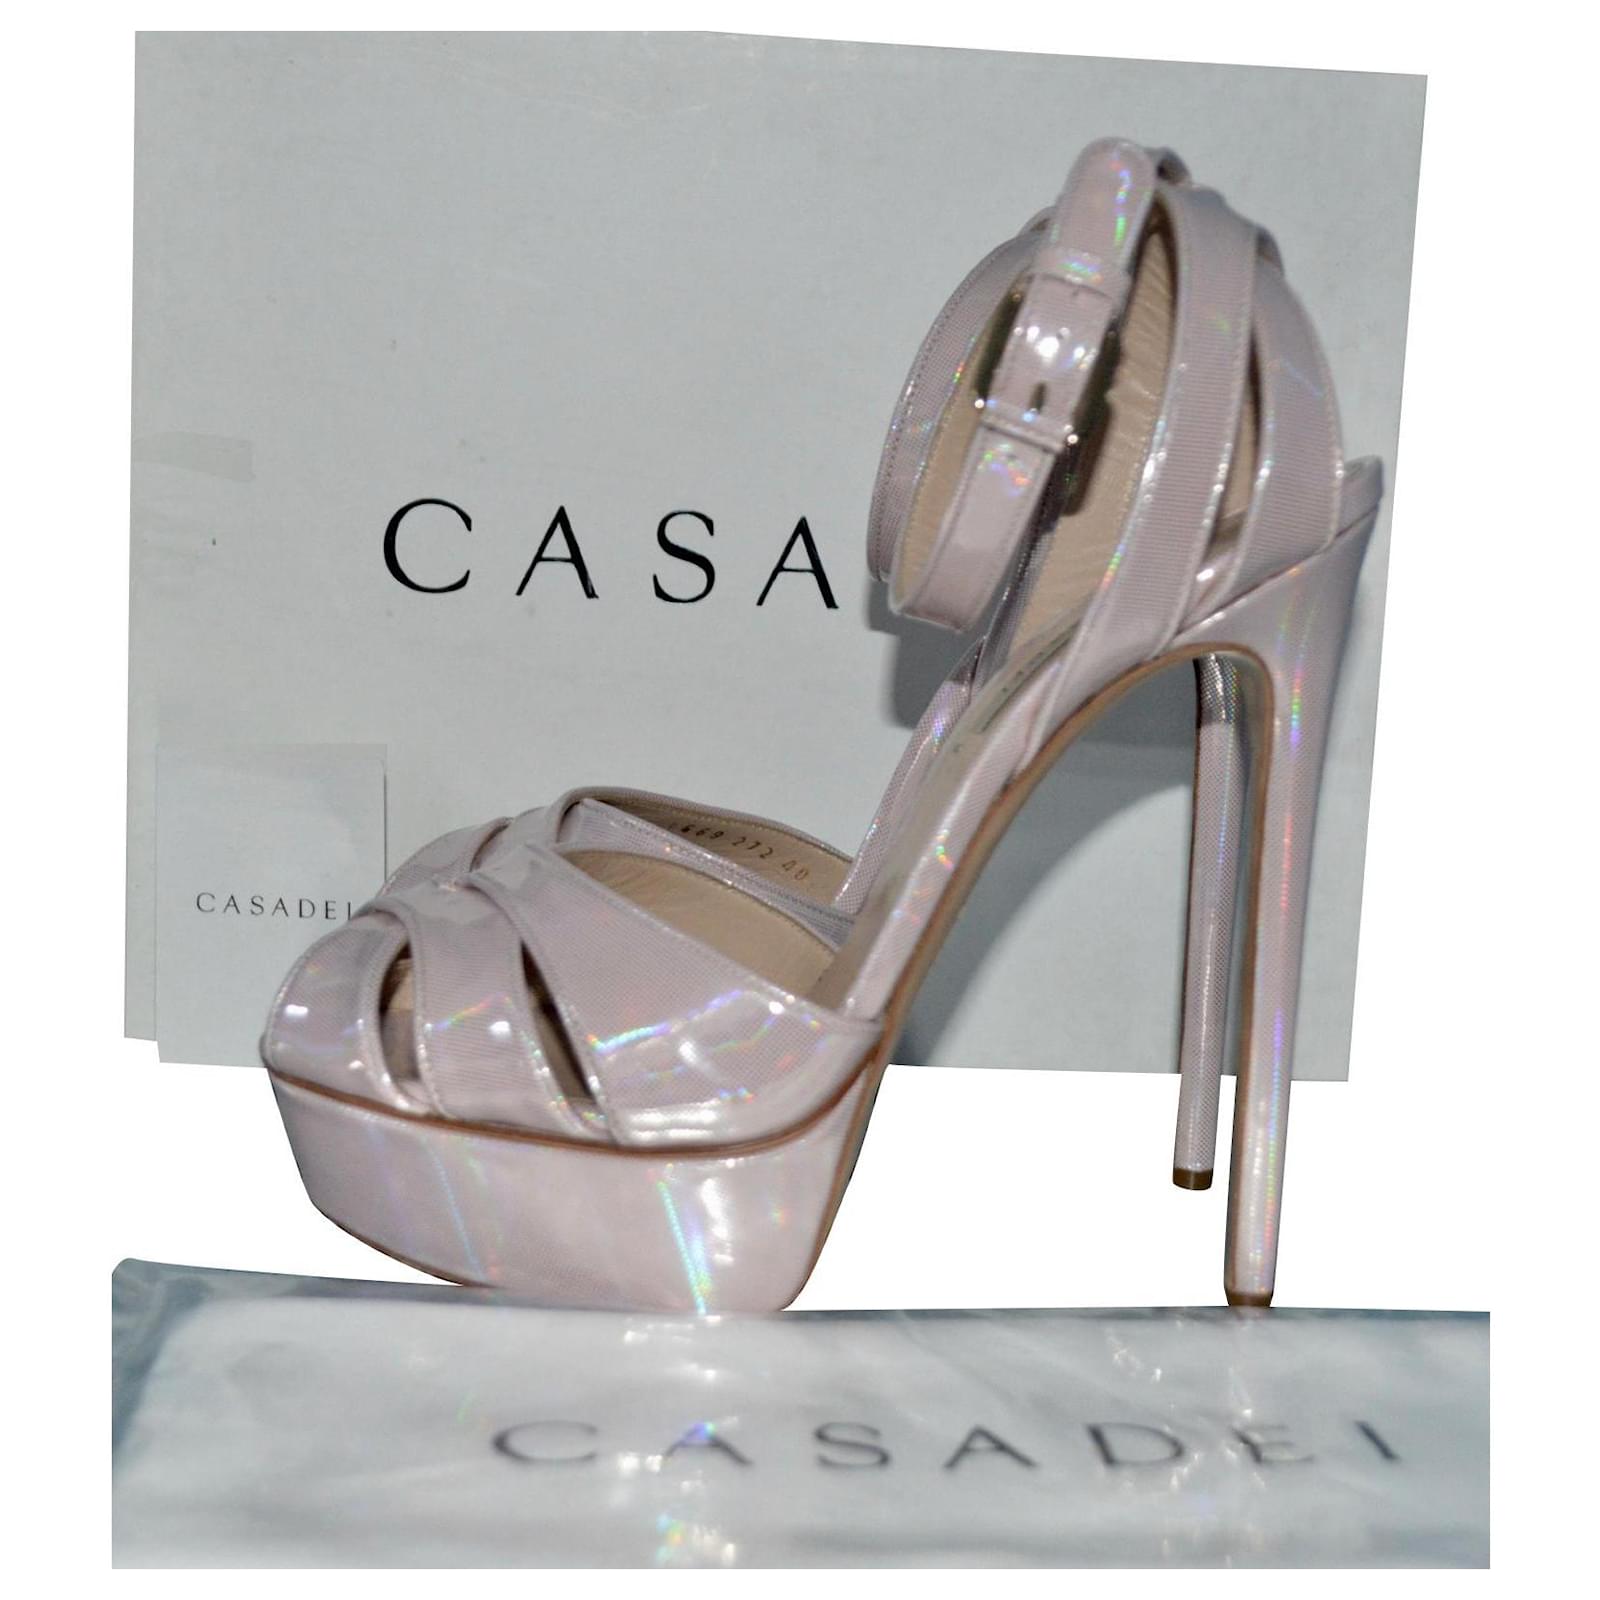 Wedge Sandals CASADEI 39 pink Wedge Sandals Casadei Women Women Shoes Casadei Women Sandals Casadei Women Wedge Sandals Casadei Women 